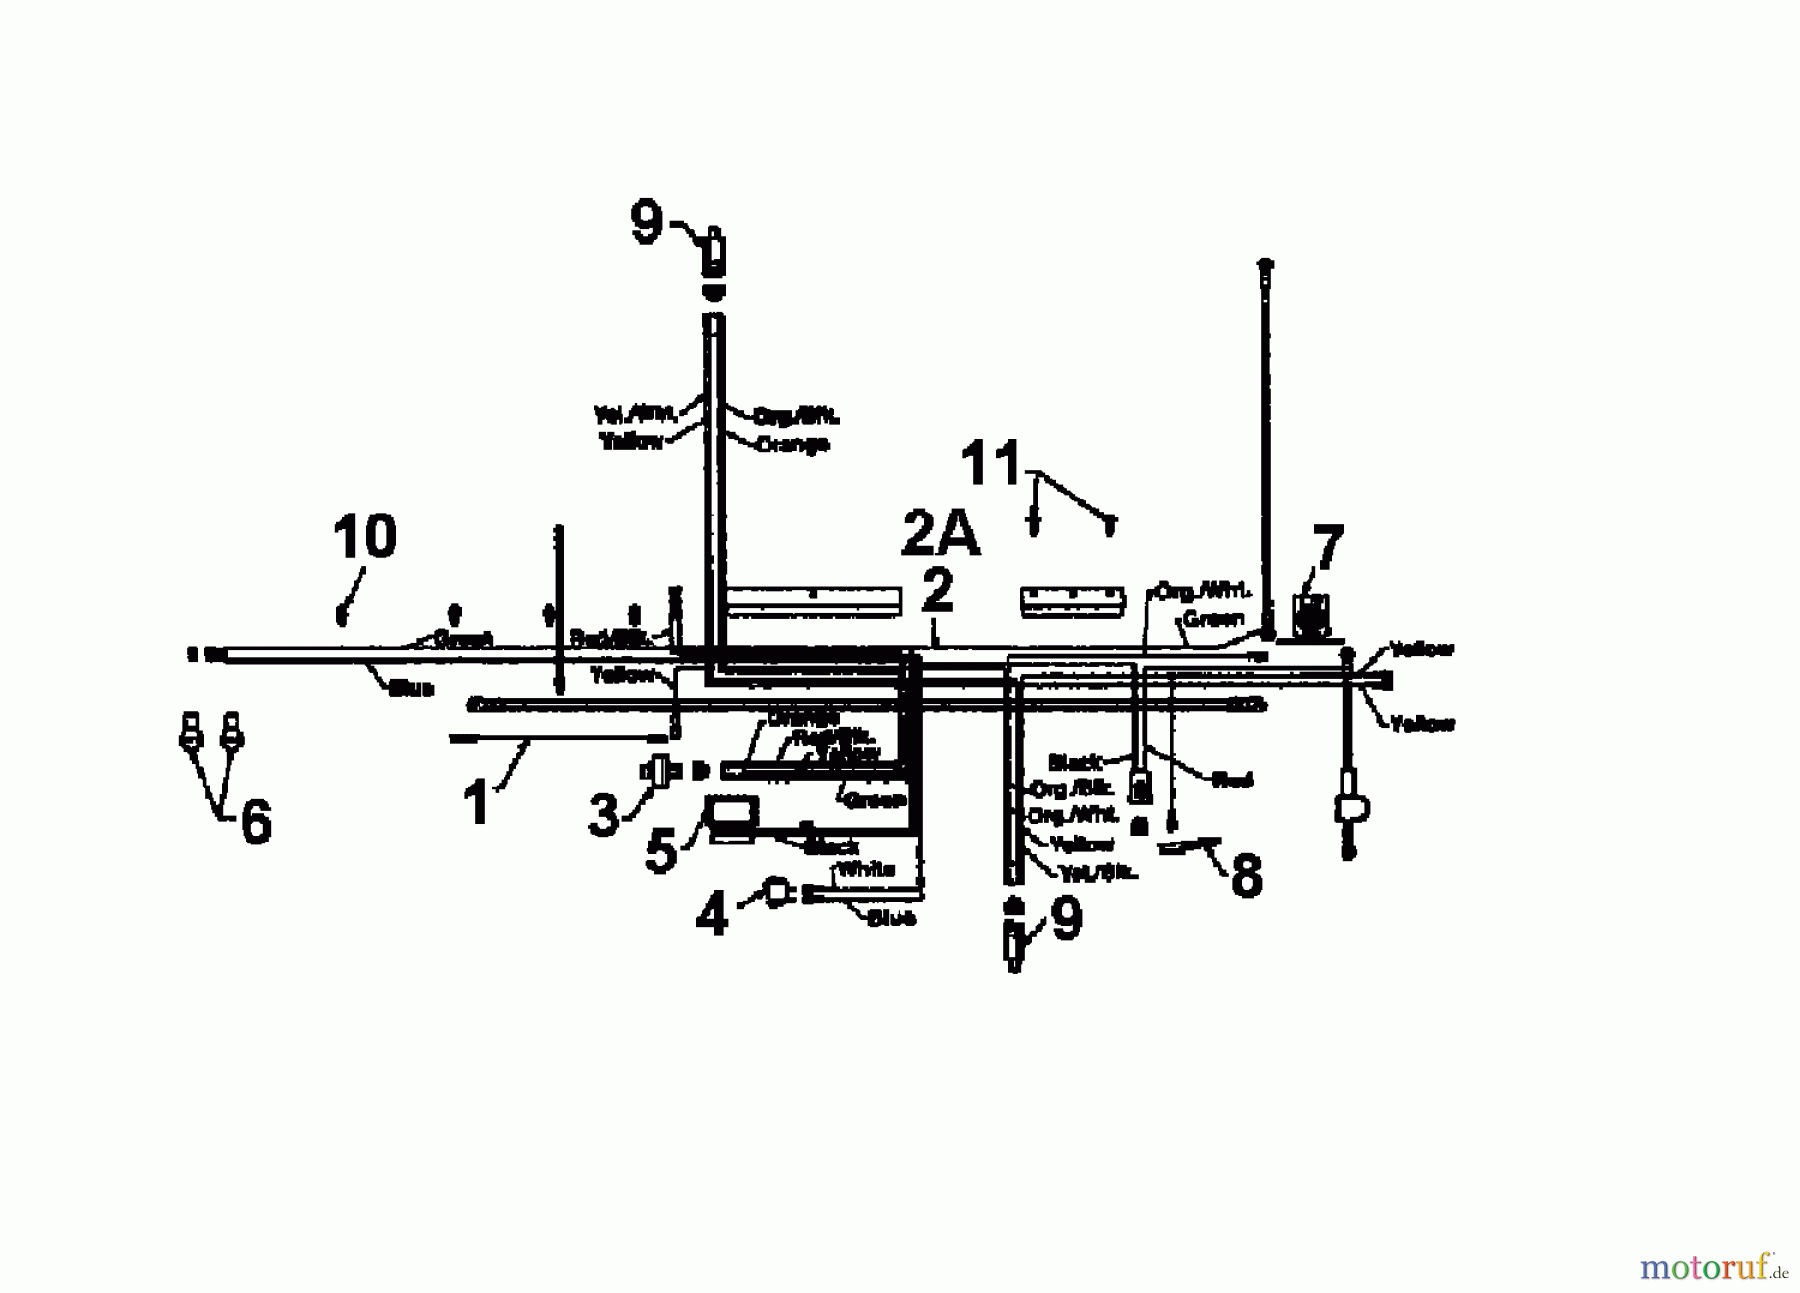  White Tracteurs de pelouse LT 135 136N696F679  (1996) Plan électrique cylindre simple